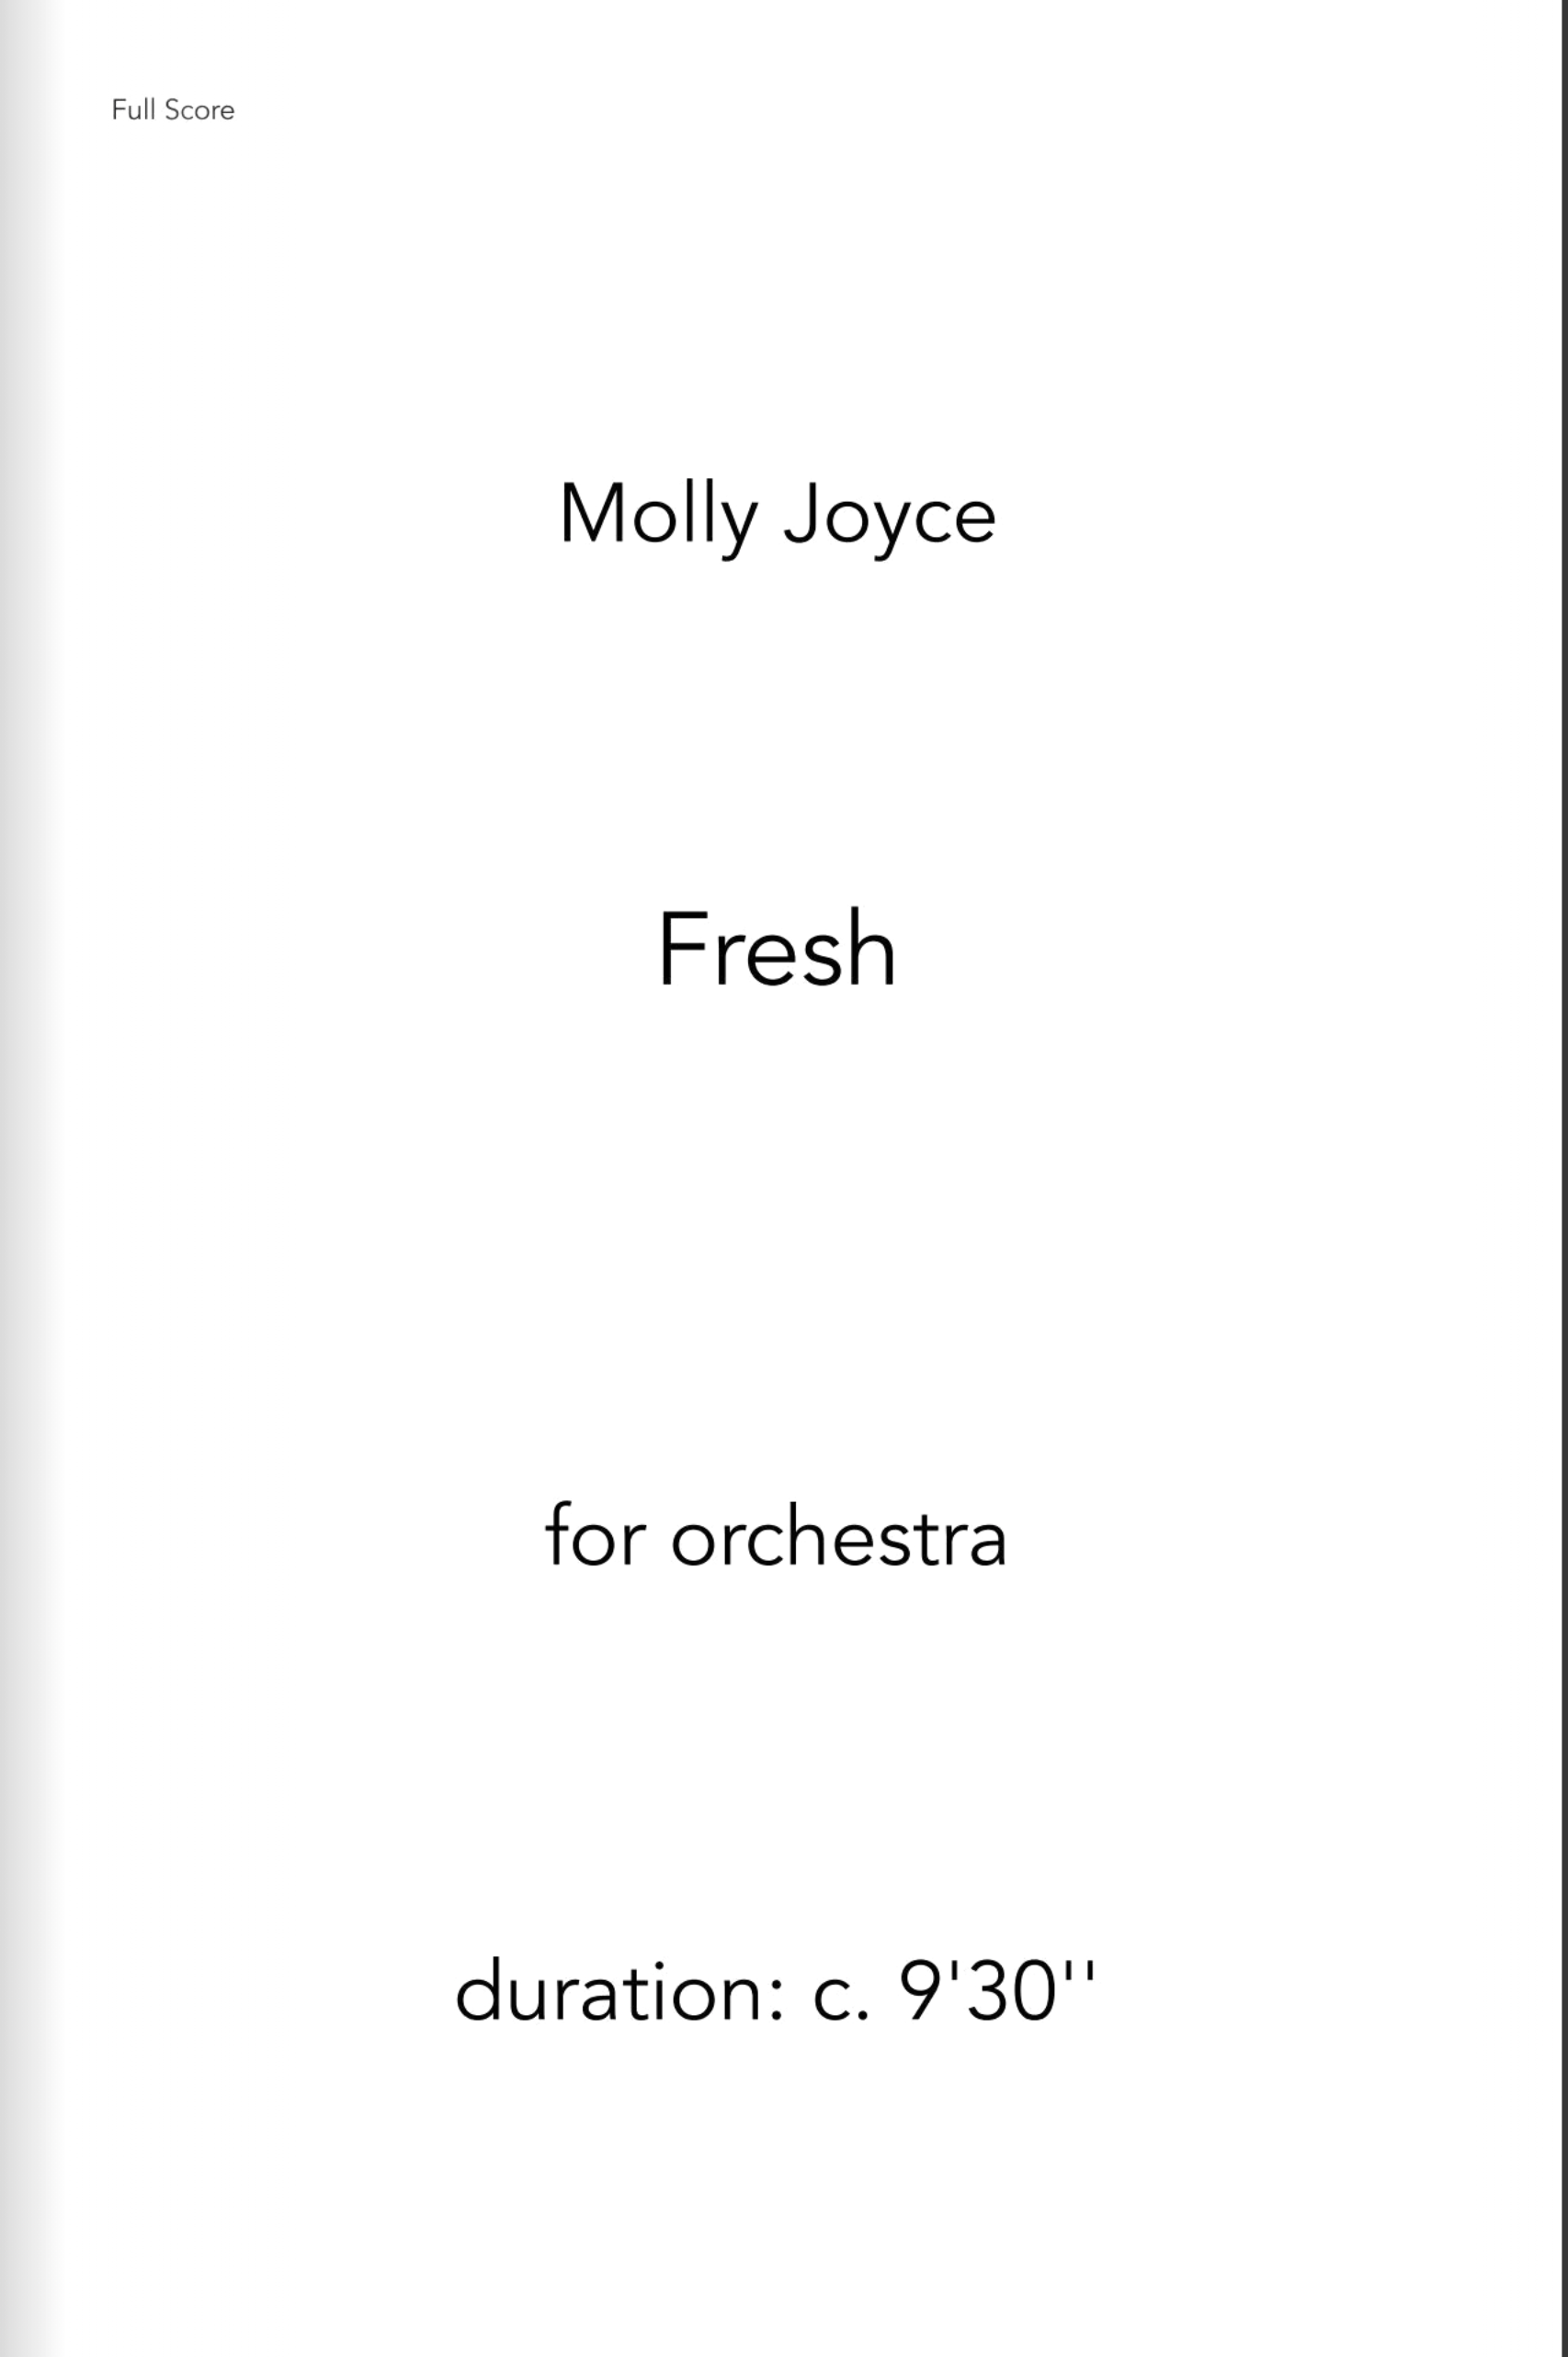 Fresh by Molly Joyce